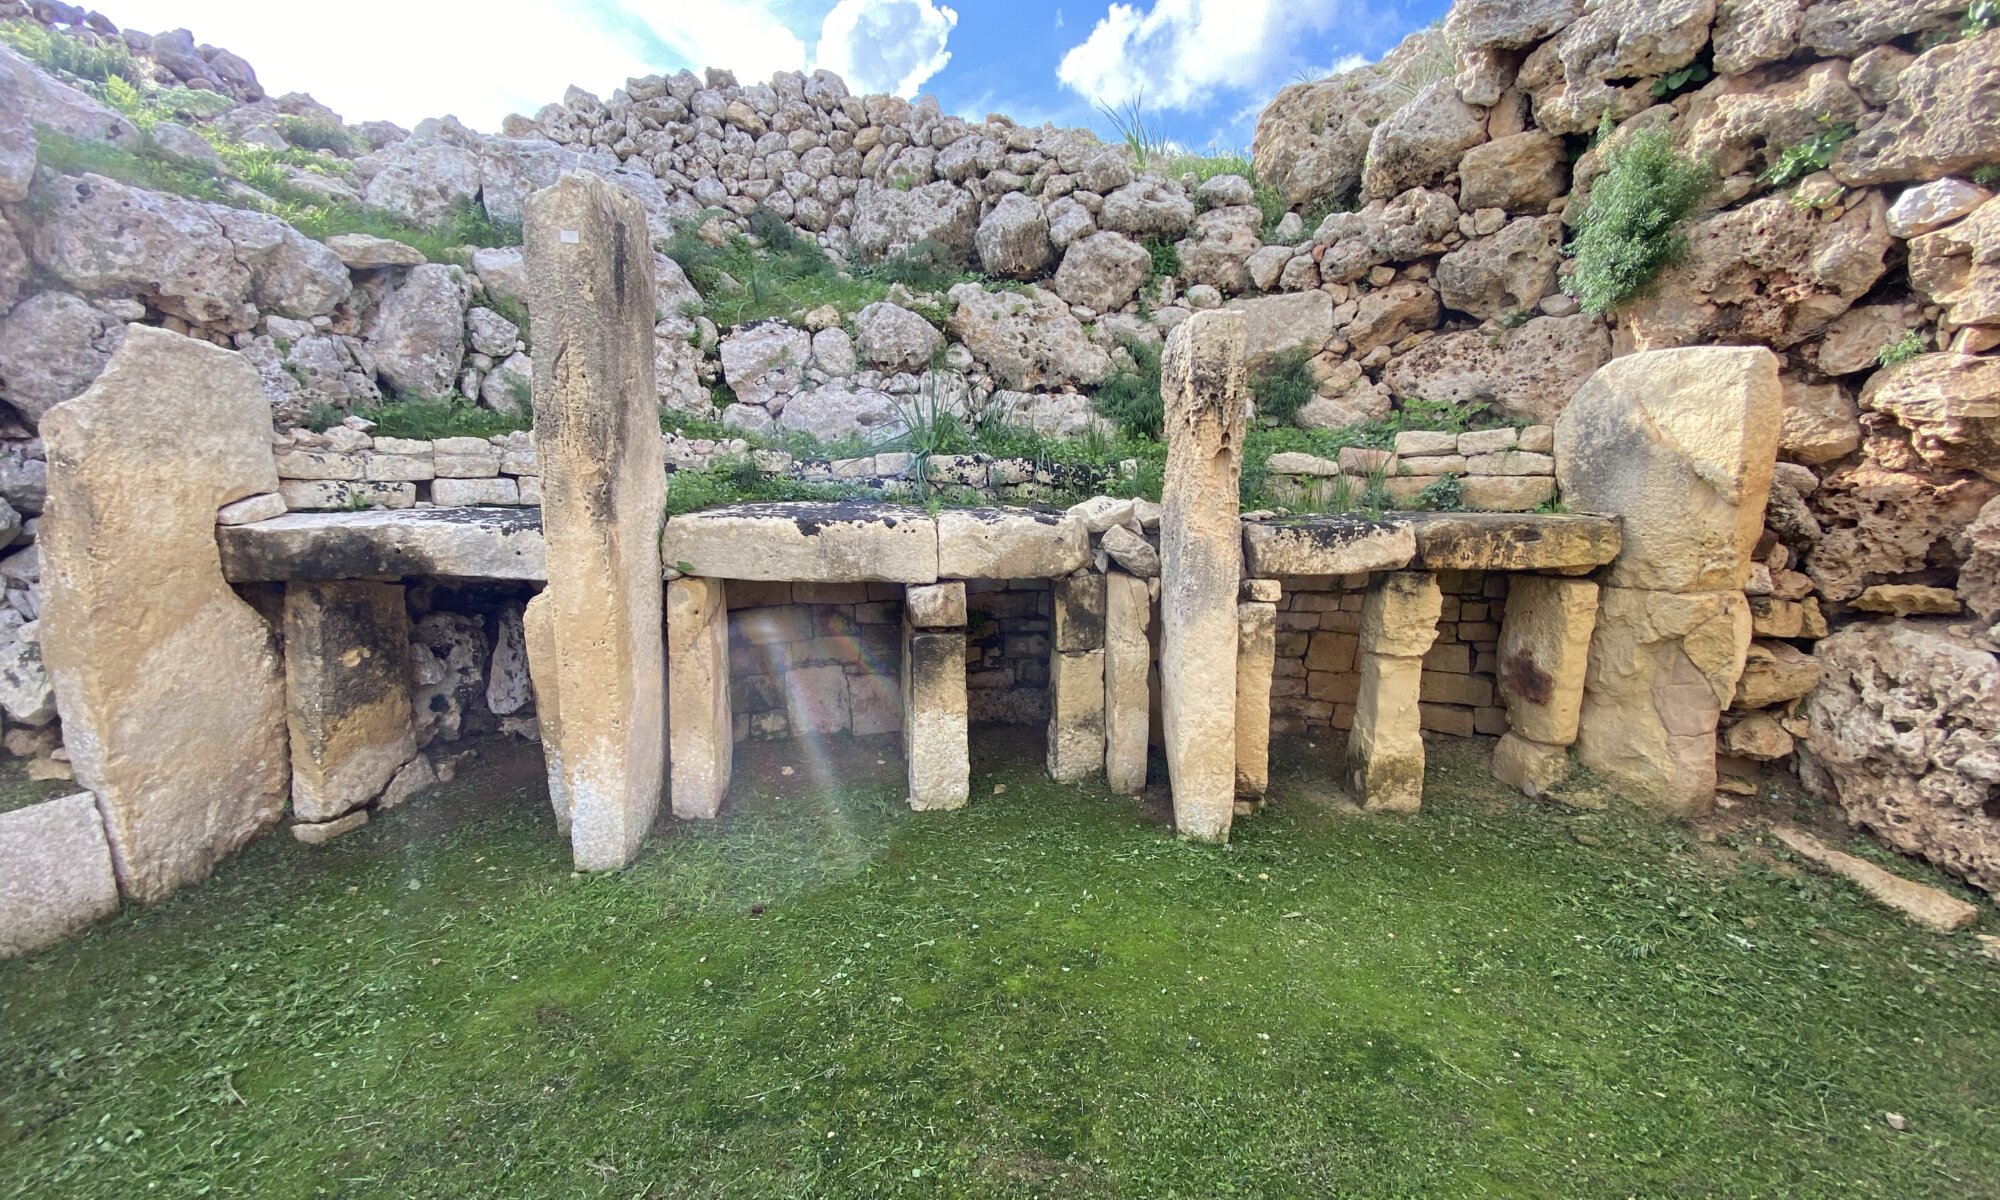 Ġgantija temple, Xagħra